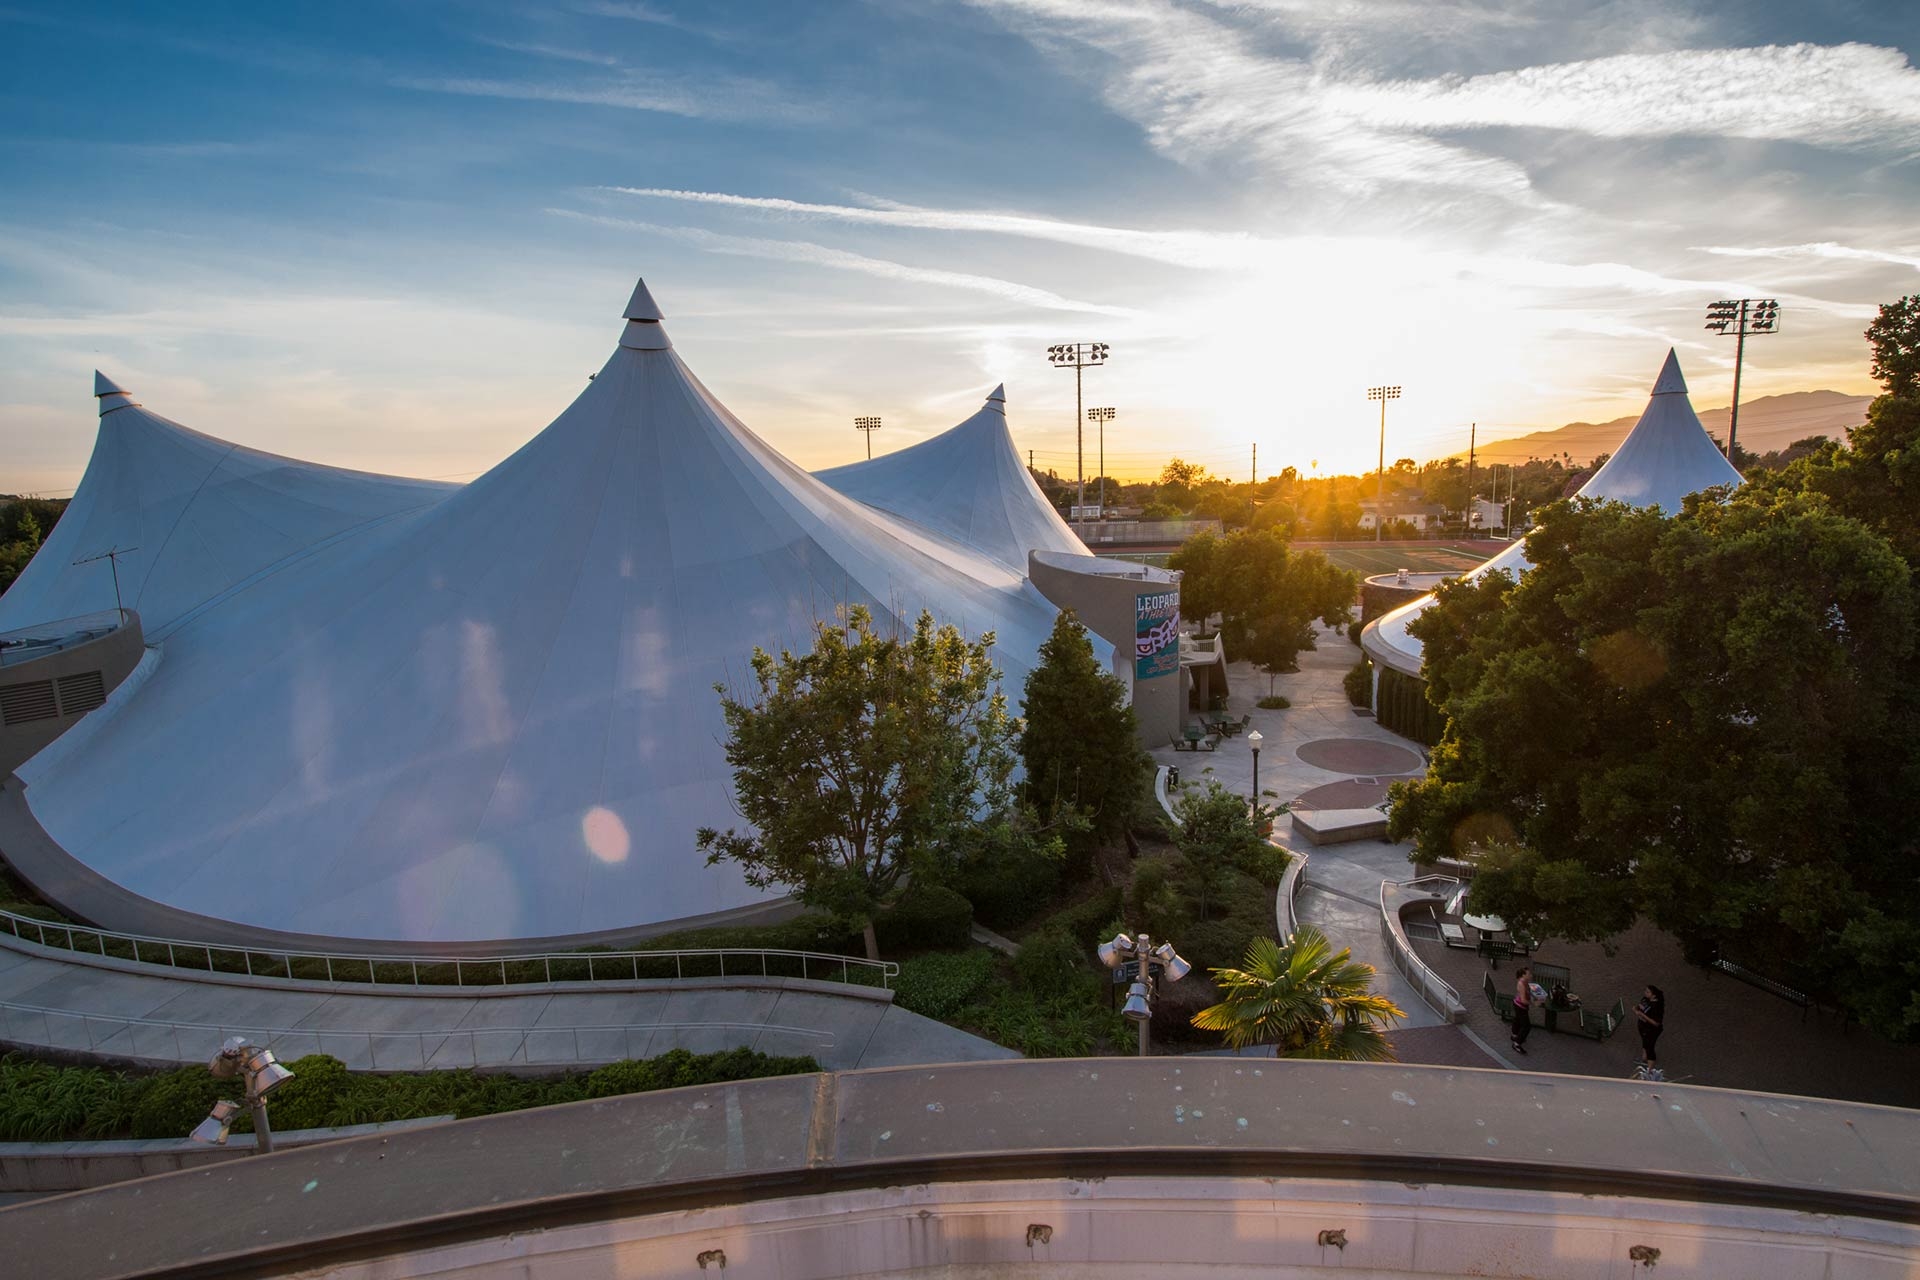 University of La Verne Athletic Pavilion - the Tents